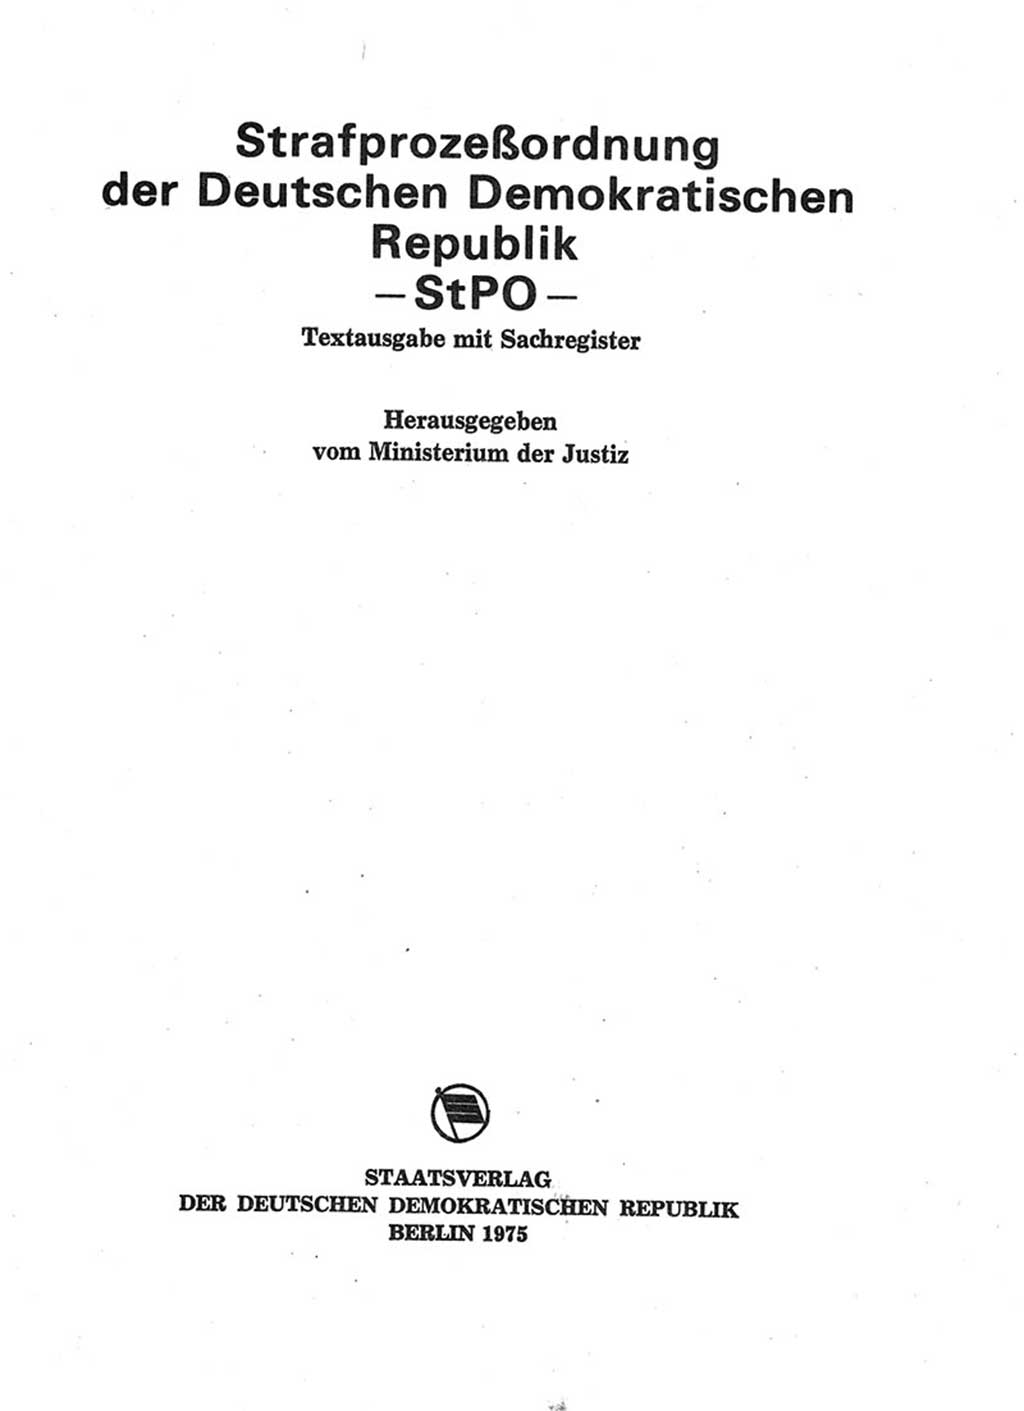 Strafprozeßordnung (StPO) der Deutschen Demokratischen Republik (DDR) 1975, Seite 3 (StPO DDR 1974, S. 3)